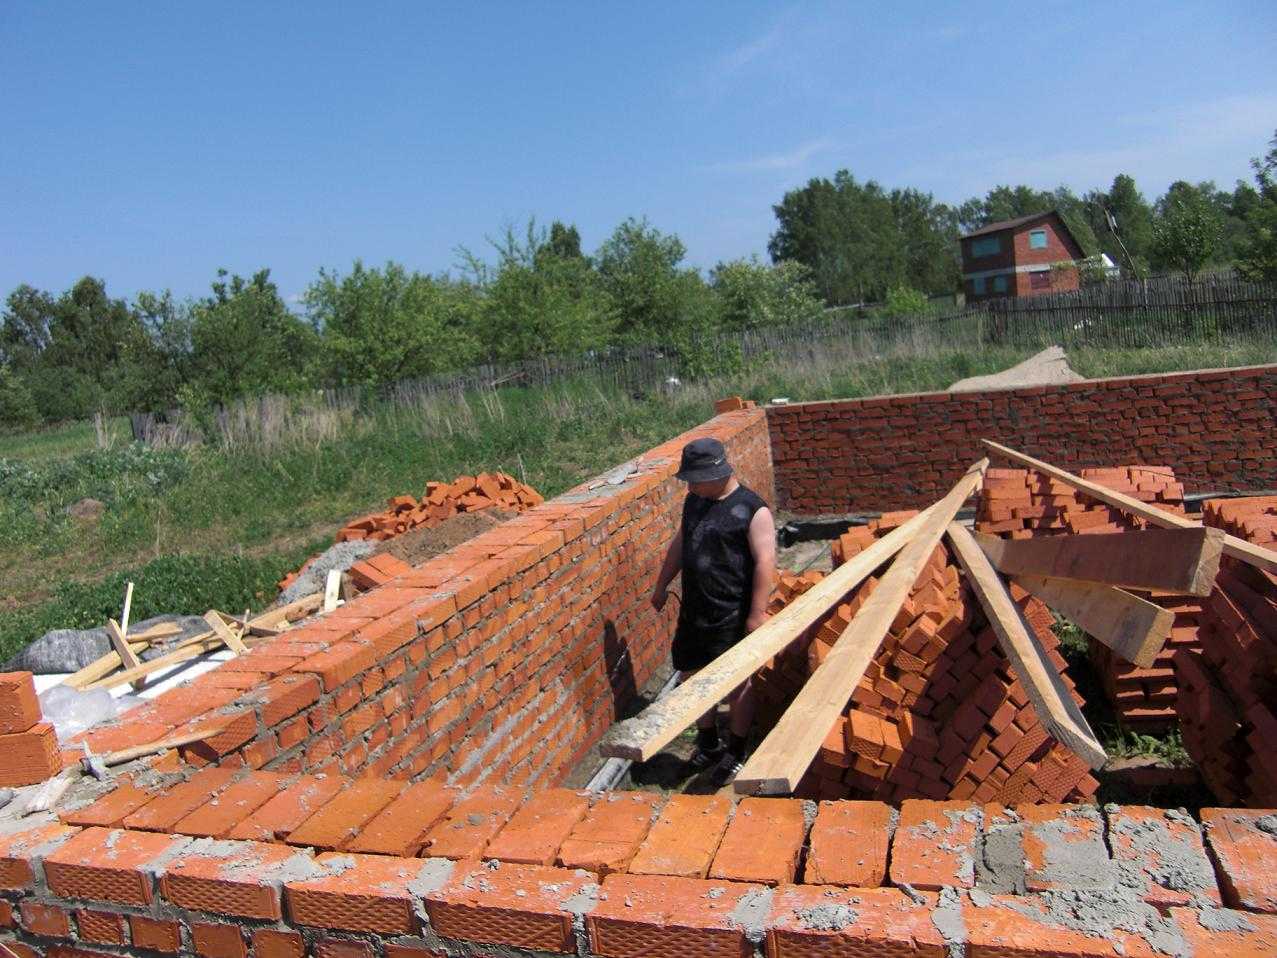 Строительство жилых домов в россии: практика и особенности законодательства